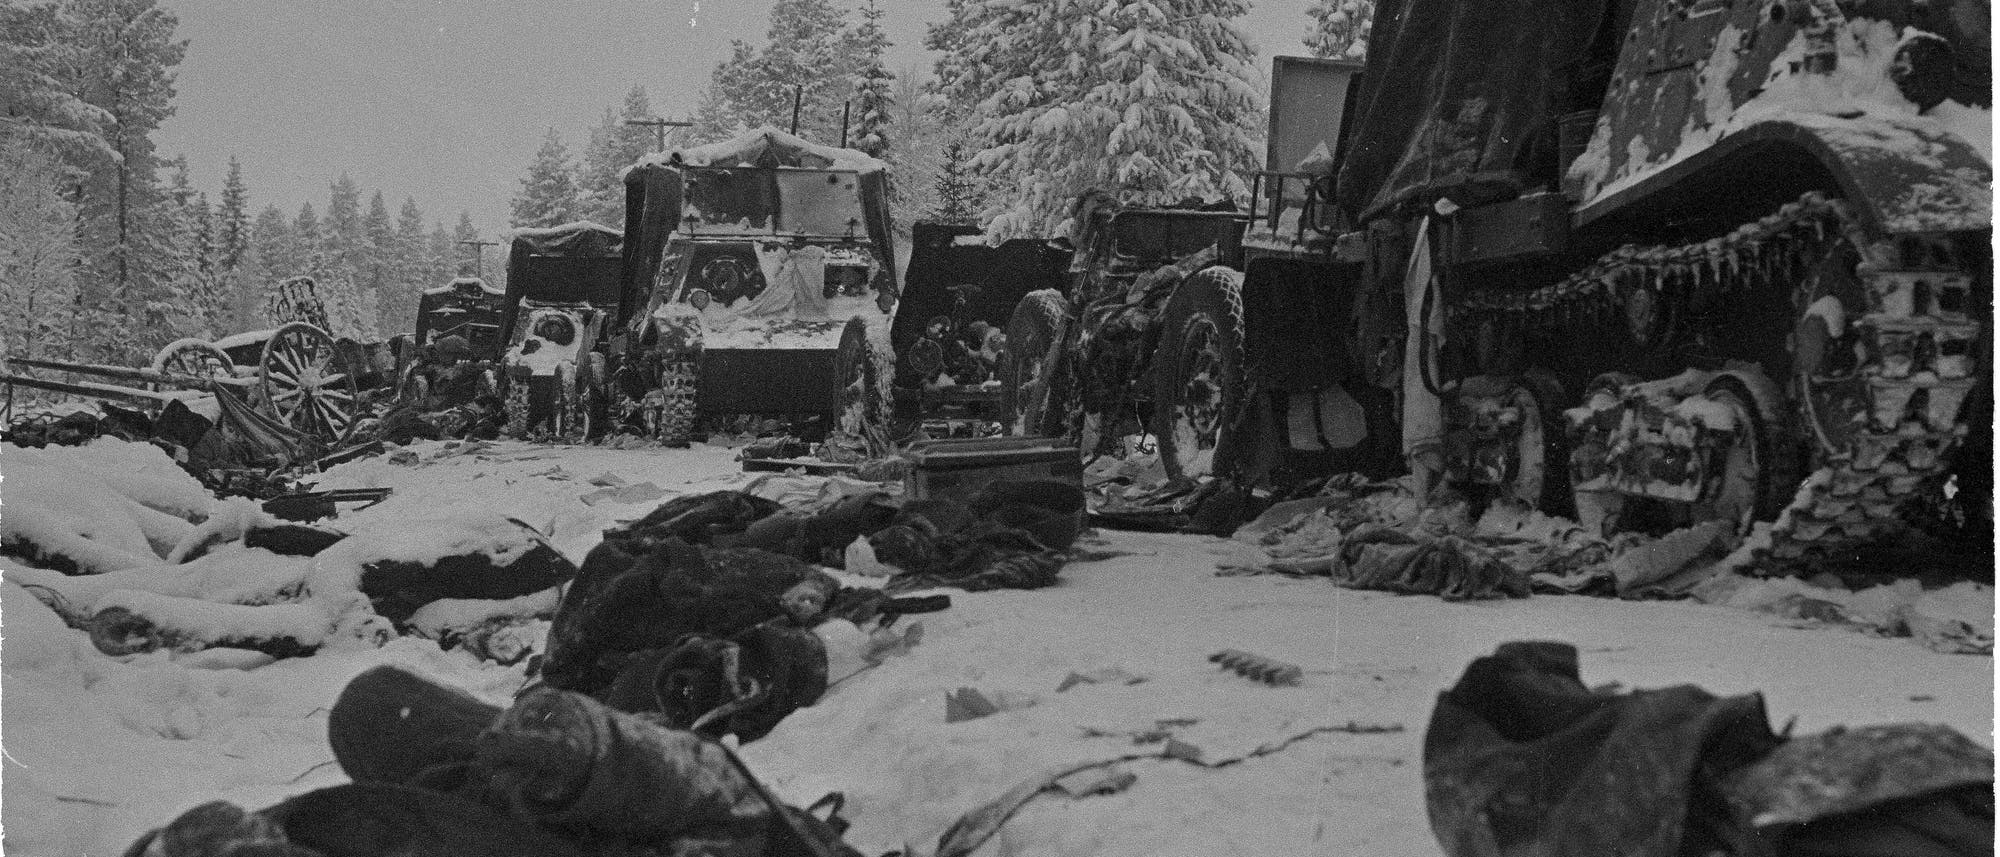 Schwarz-Weiß-Foto zerstörter Panzer und Fahrzeuge im Schnee